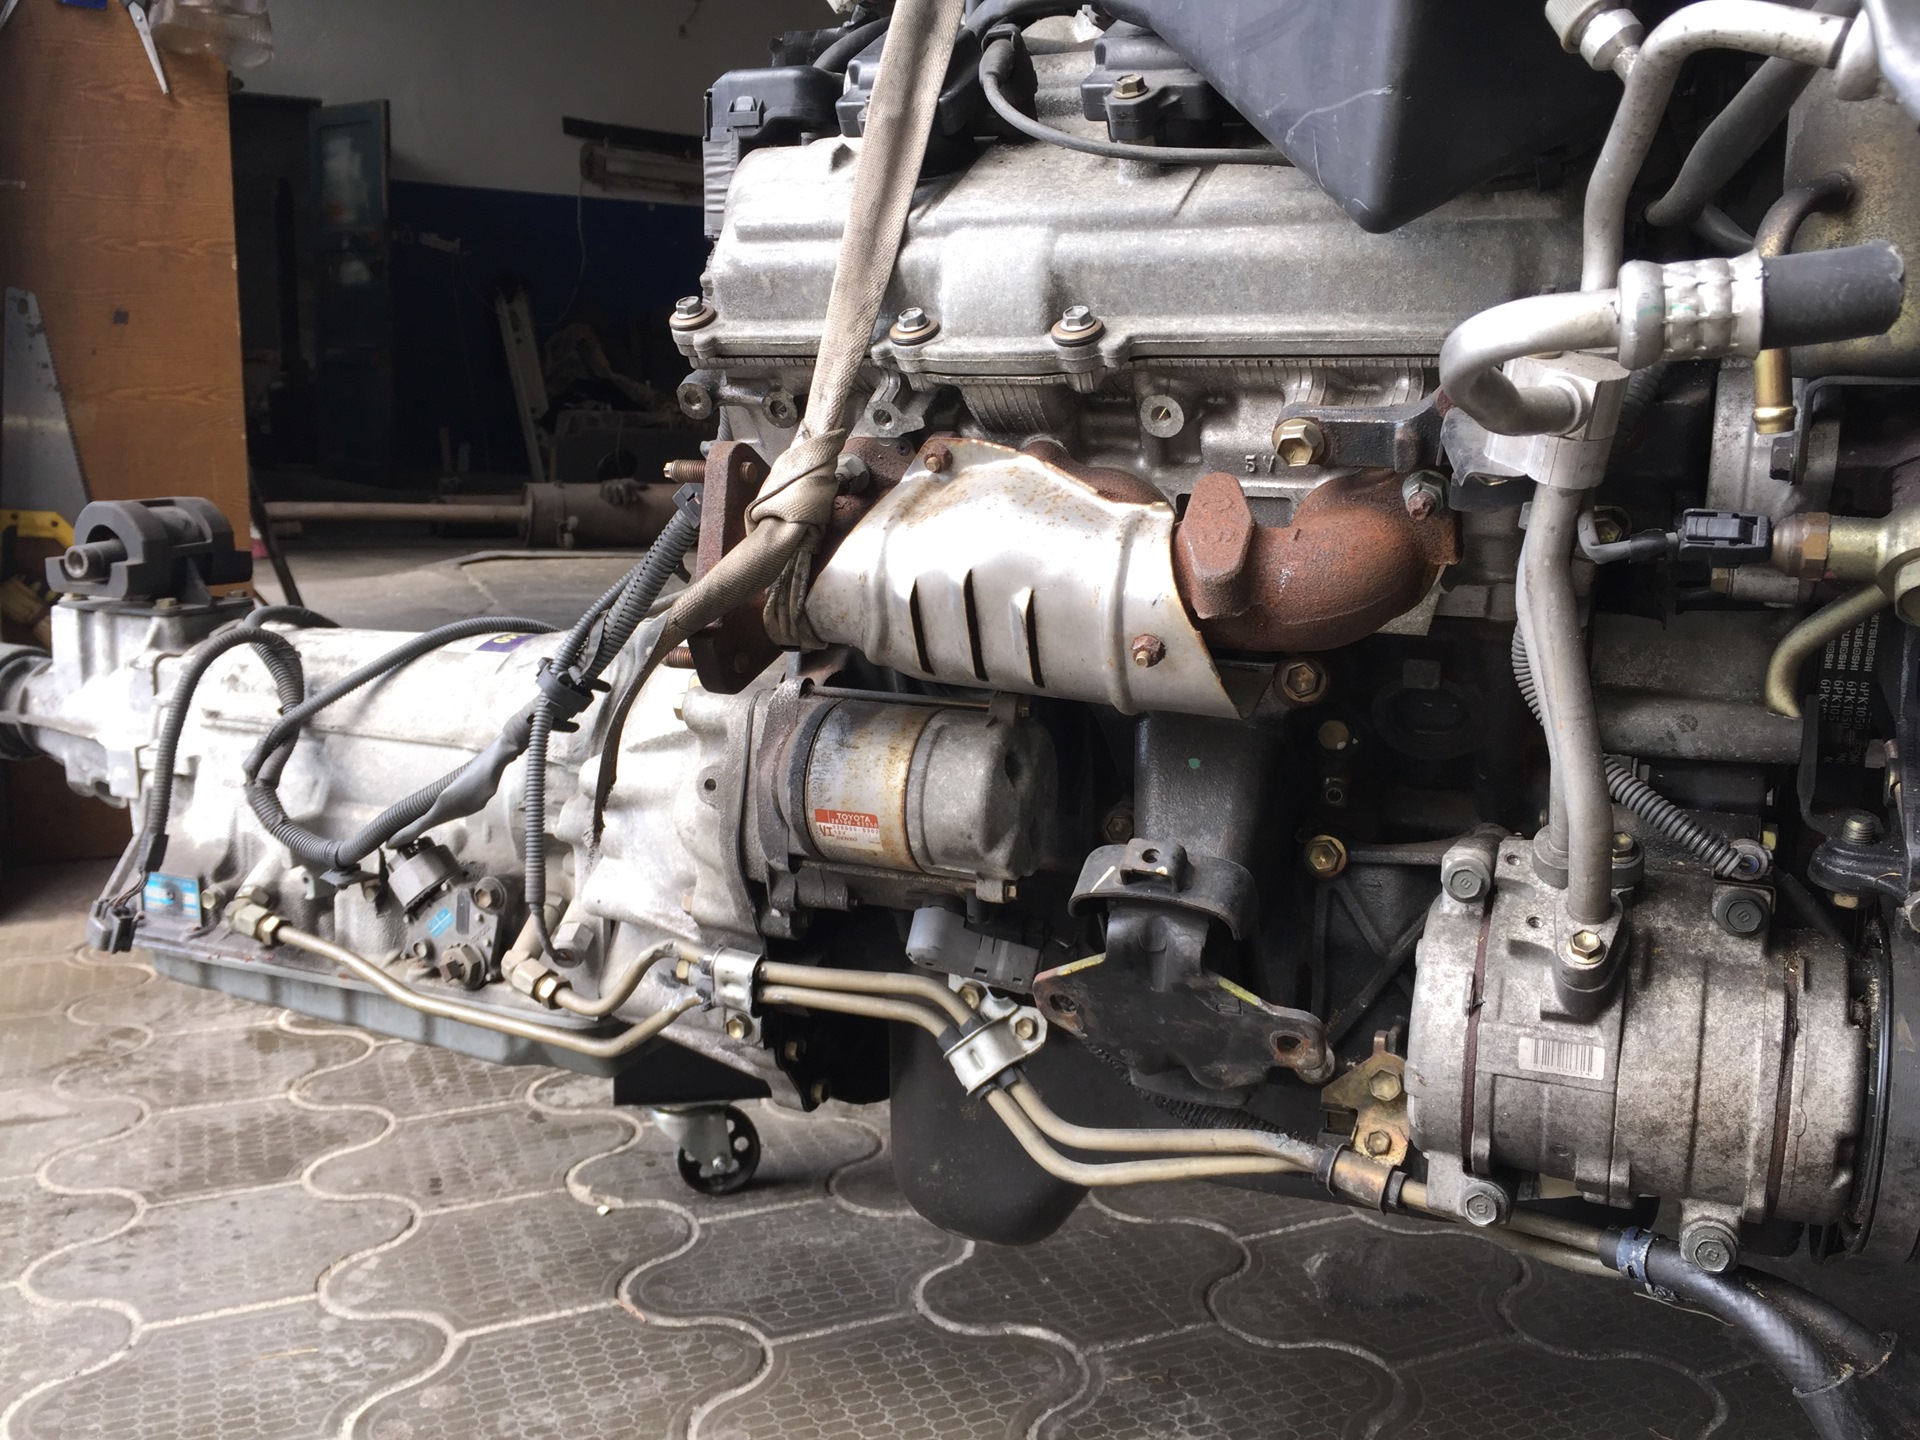 Двигатель 5vz fe toyota, газ, уаз, технические характеристики, какое масло лить, ремонт двигателя 5vz fe, доработки и тюнинг, схема устройства, рекомендации по обслуживанию